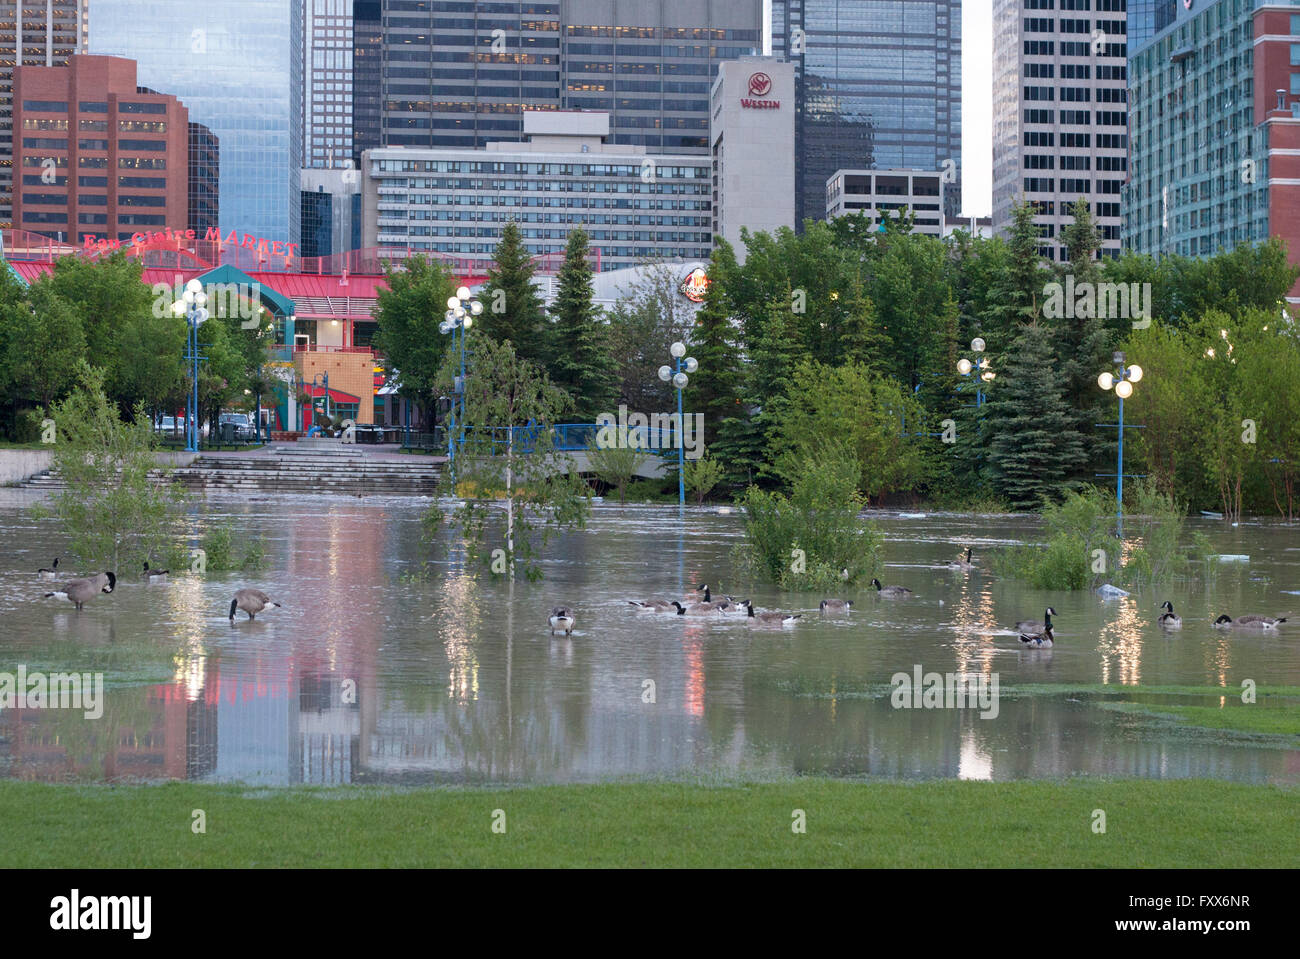 Canada Geese nuota nella laguna allagata durante l'alluvione del fiume Bow nell'area di Eau Claire nel centro di Calgary, Canada Foto Stock